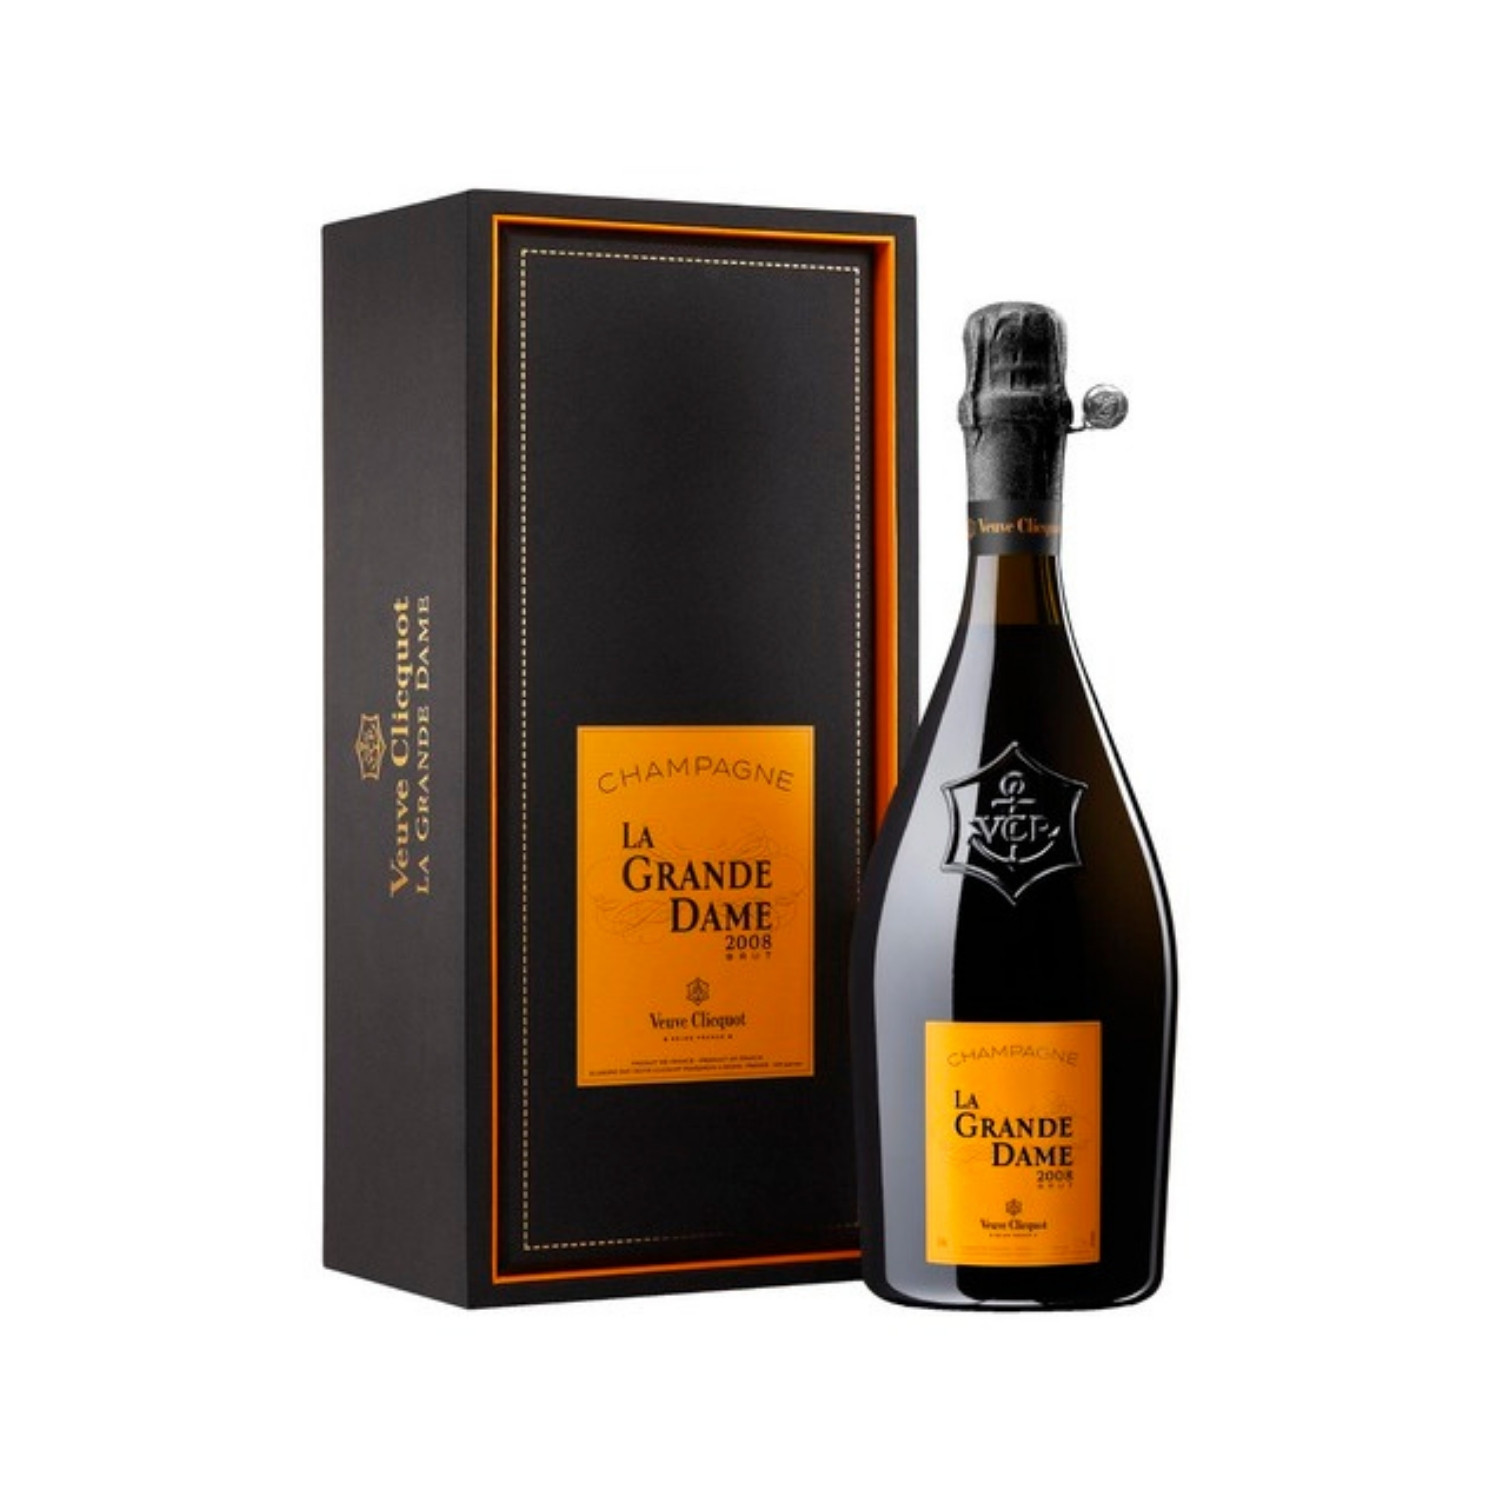 Champagne Veuve Clicquot La Grande Dame 2015